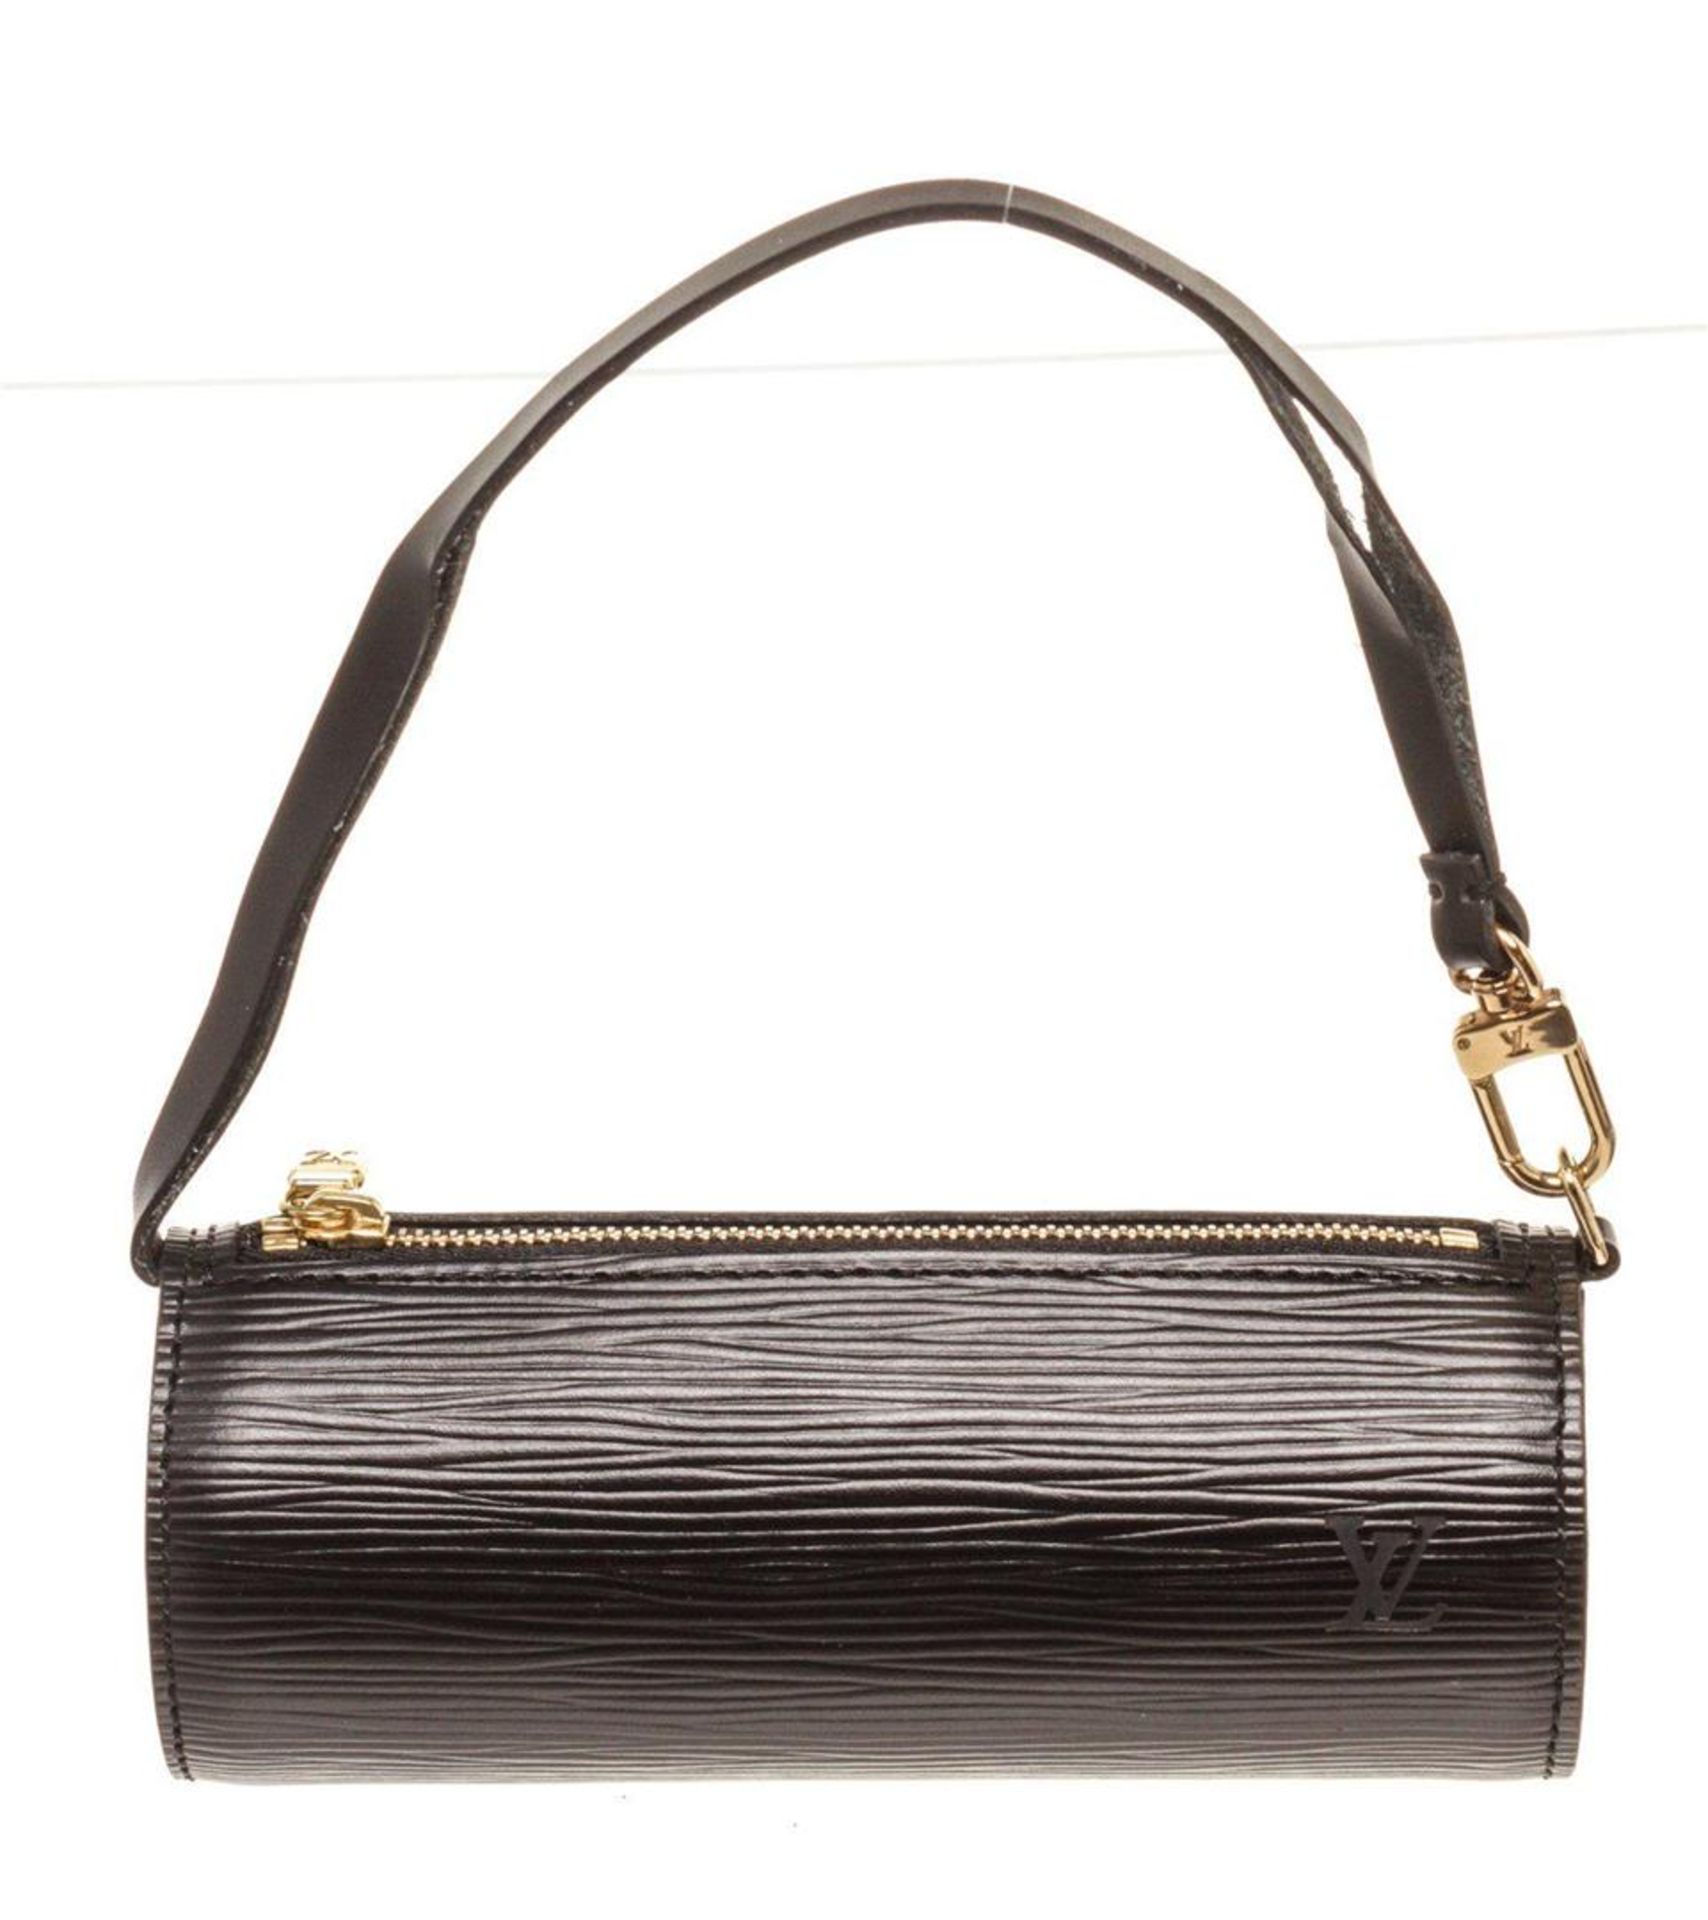 Louis Vuitton Black Epi Leather Mini Papillon Shoulder Bag